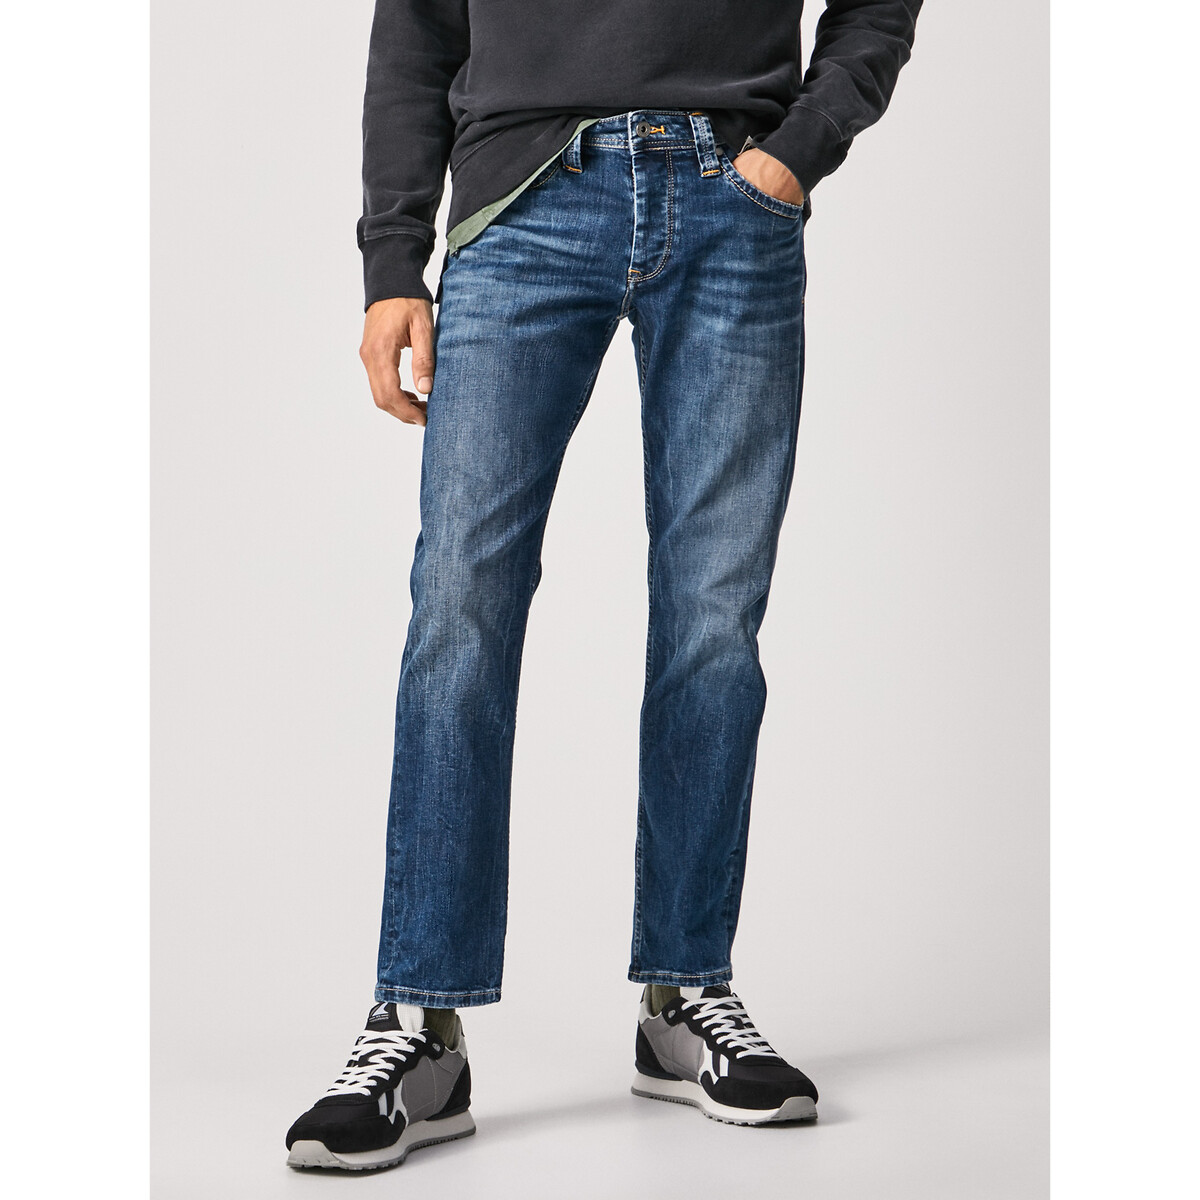 La Redoute Homme Vêtements Pantalons & Jeans Jeans Baggy & Large Jean Fuselé Taille Moyenne 3301 